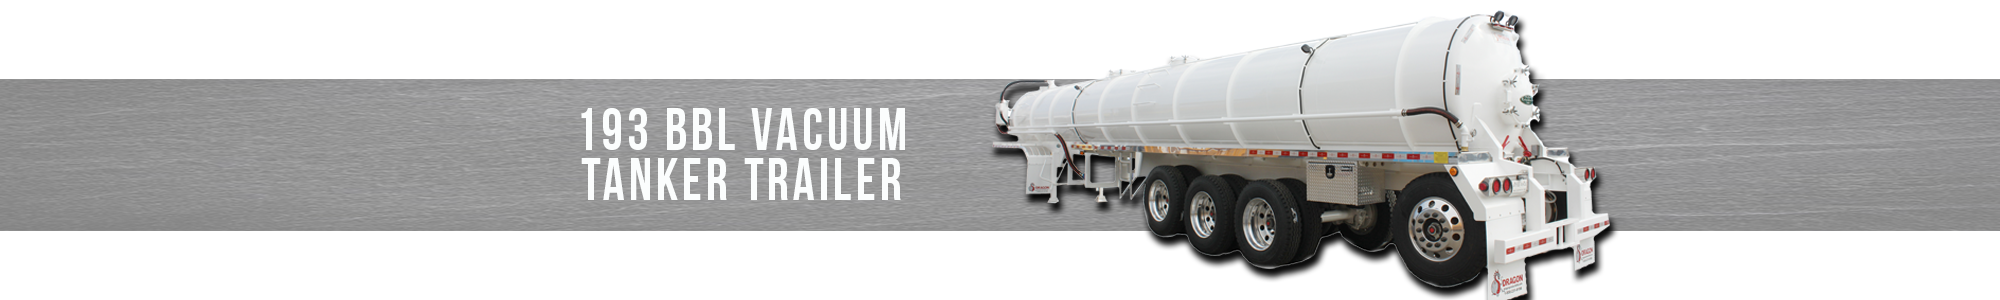 193 BBL Vacuum Tanker Trailer